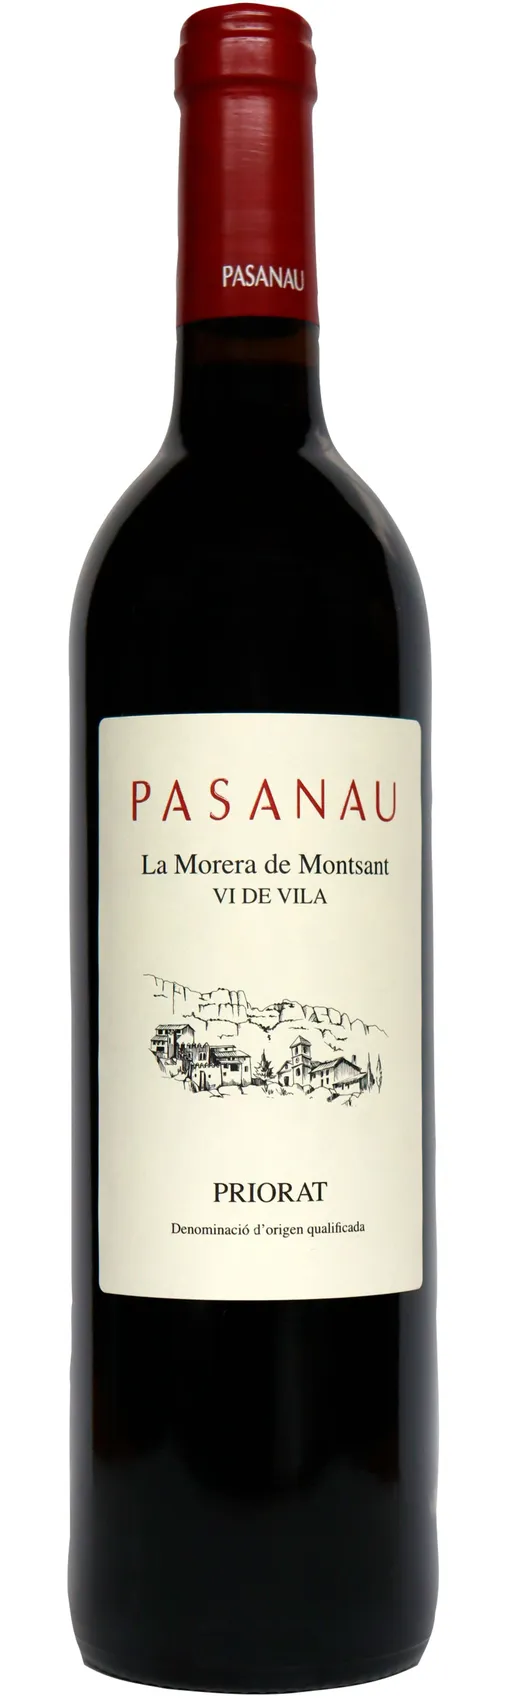 PASANAU GERMANS SOCIEDAD LIMITADA. PASANAU, Vi de Vila La Morera de Montsant, Red, 2019, Priorat / Priorato. Bottle image